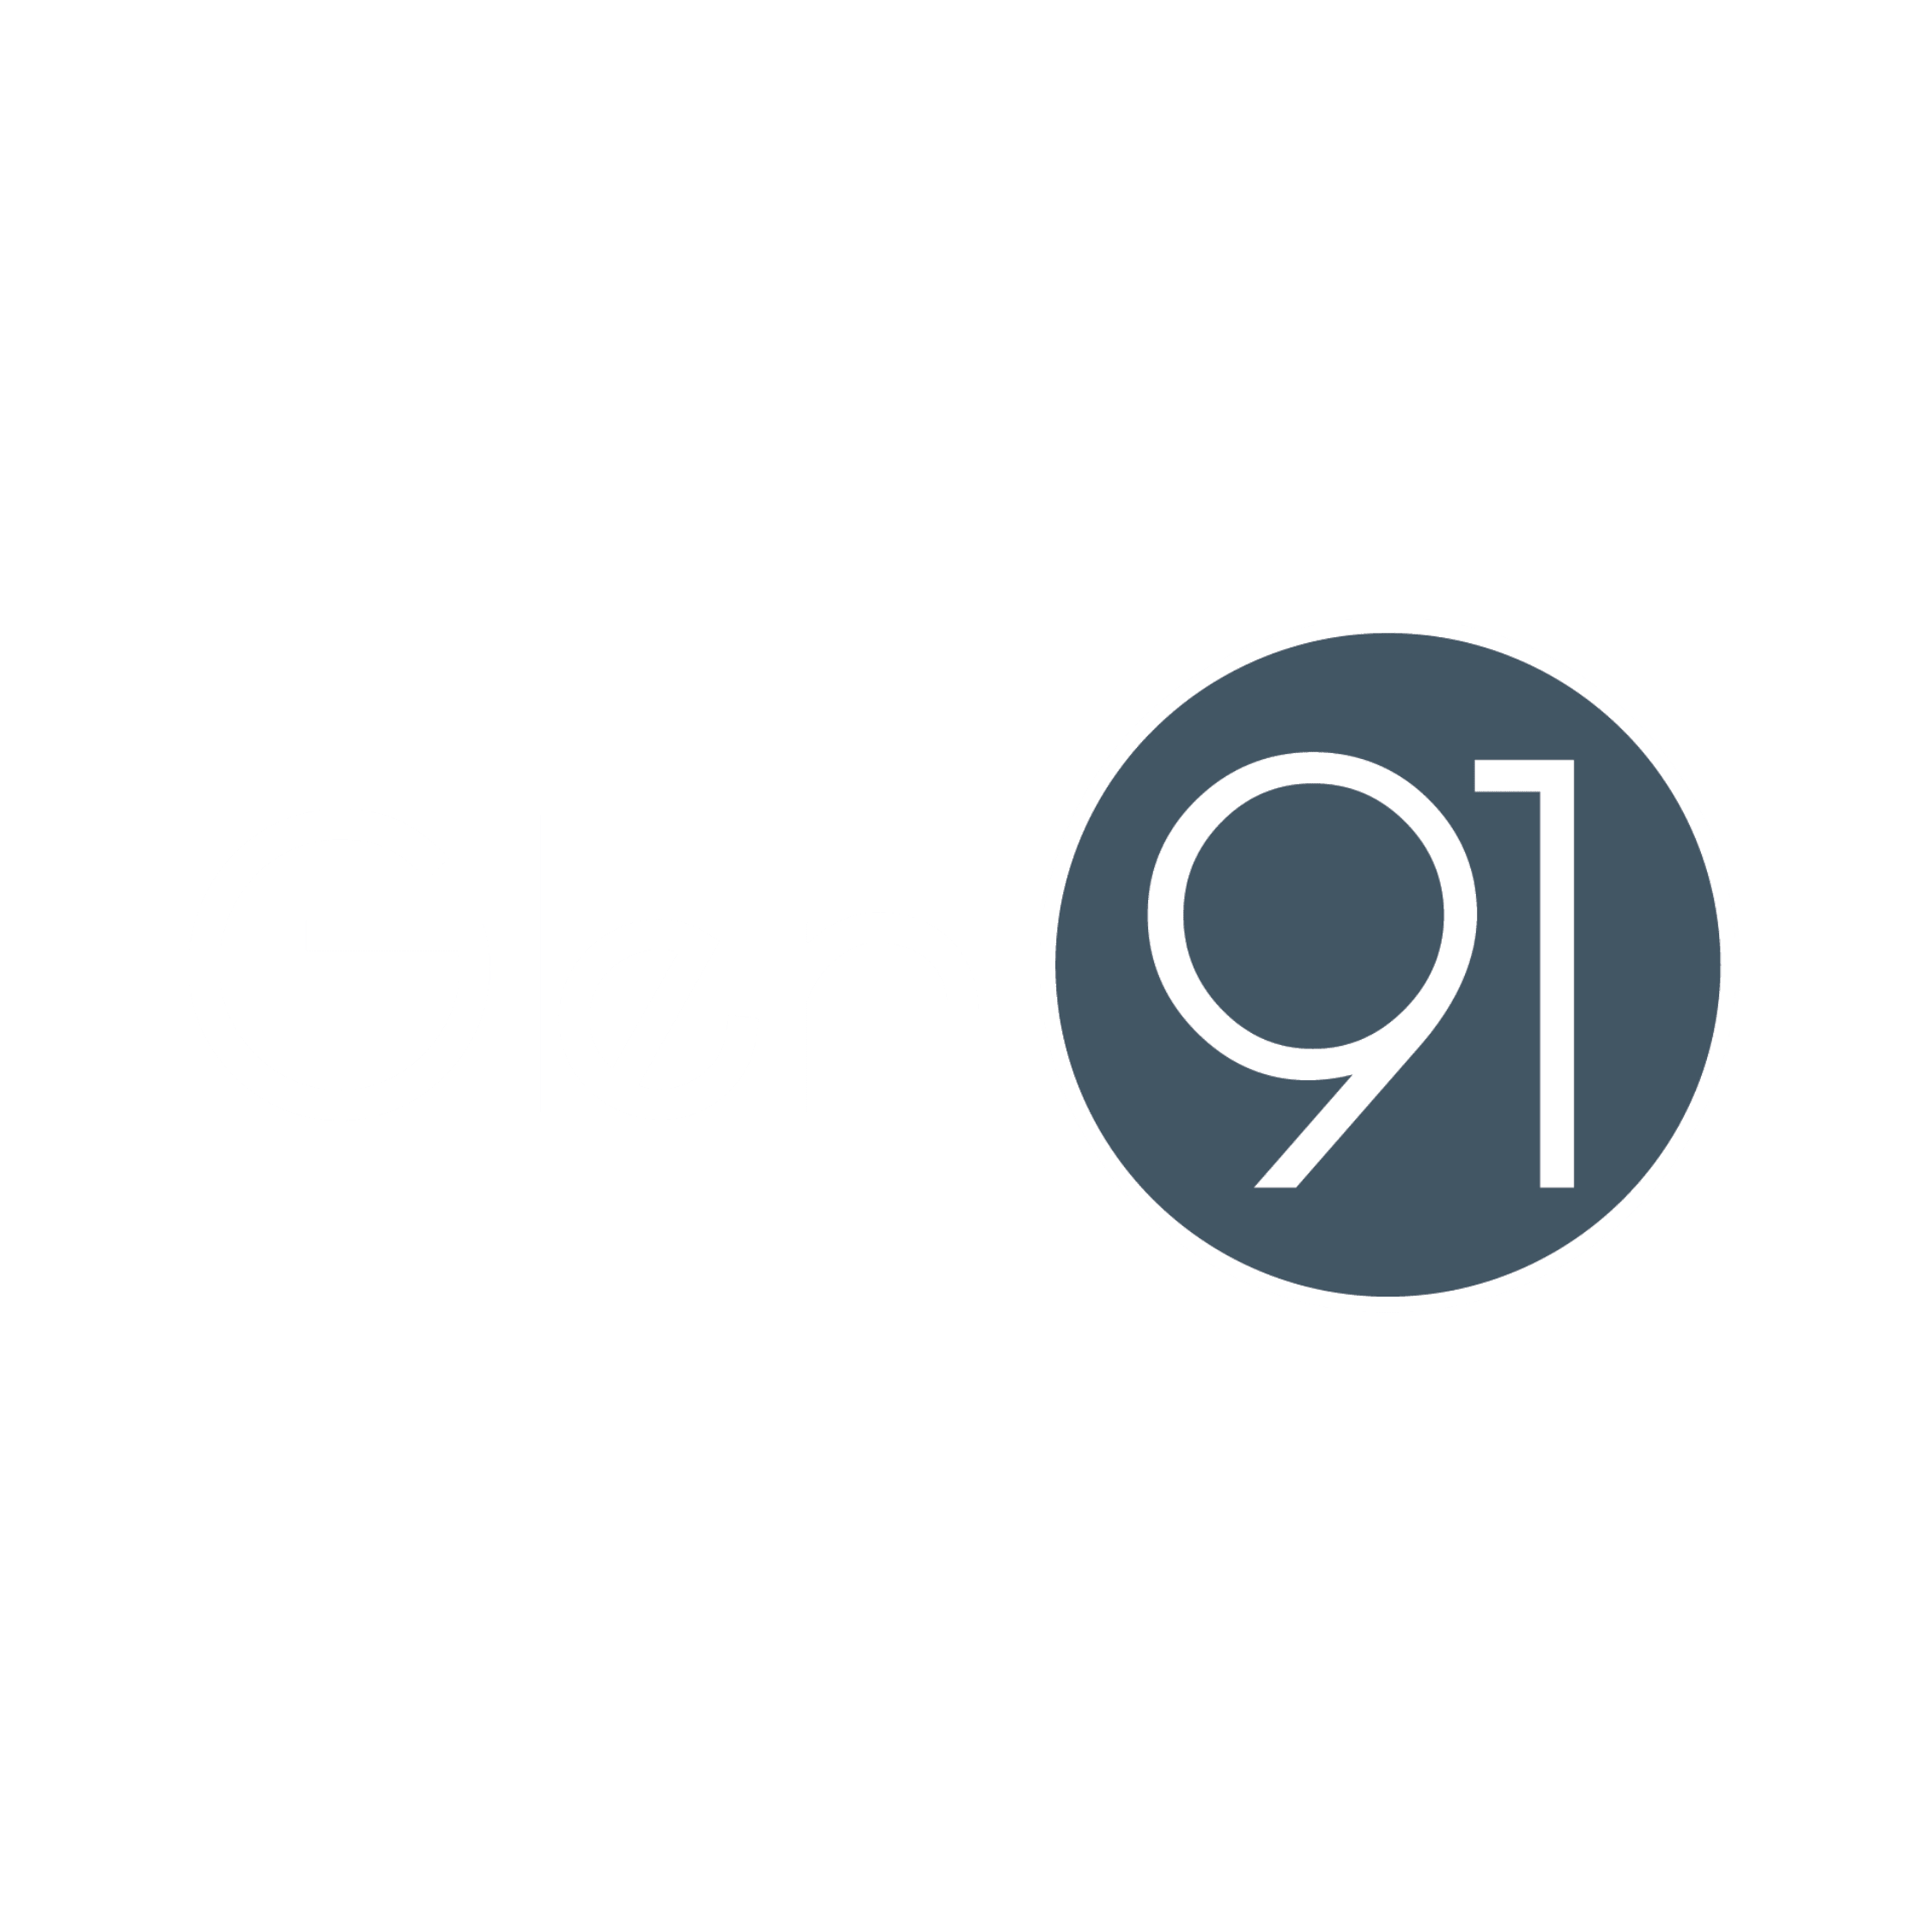 glen-moray-logo - Whisky Boys